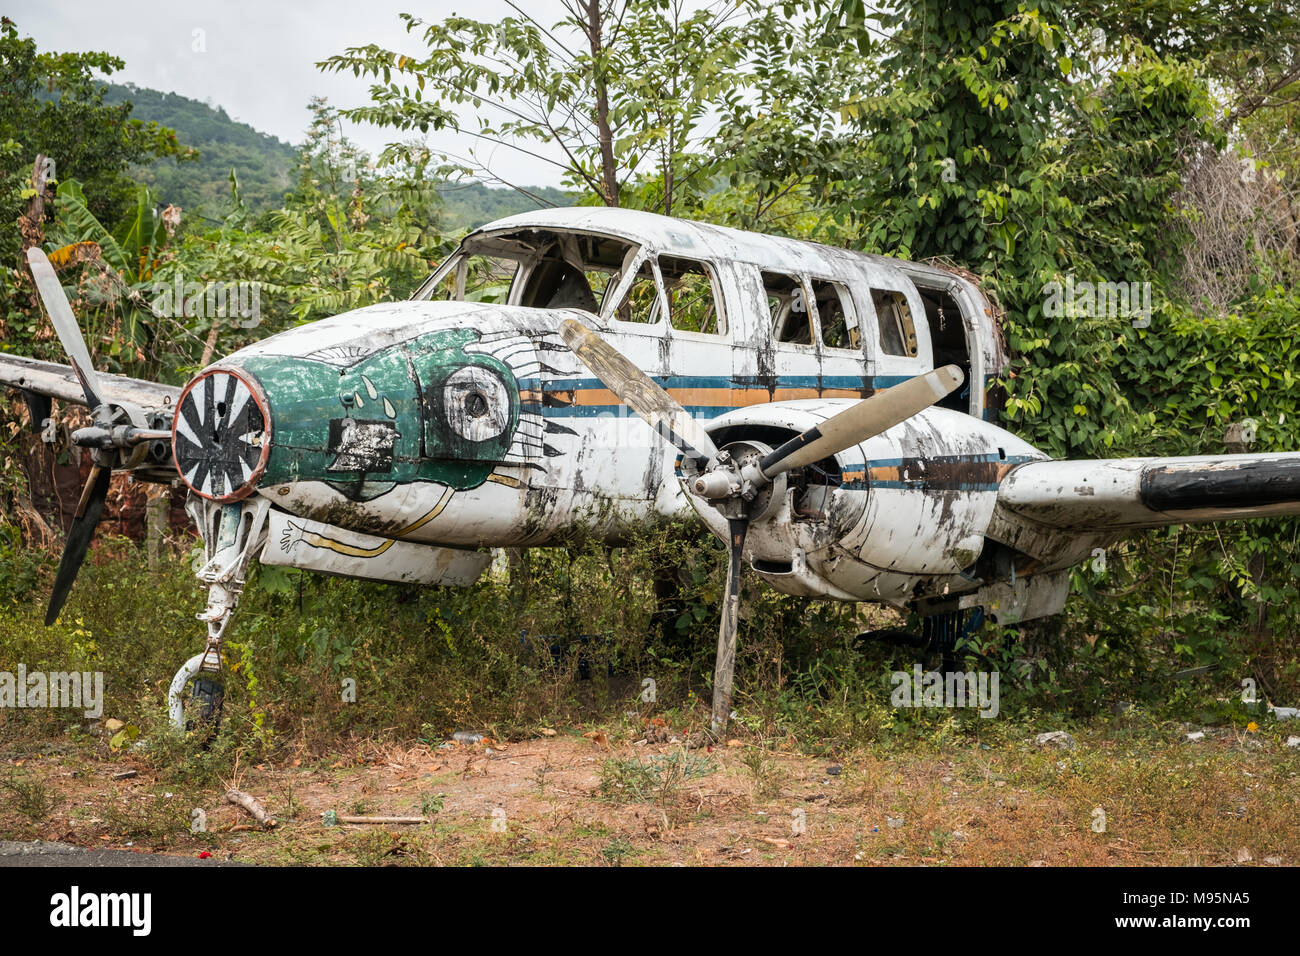 Flugzeugwrack im Dschungel - alte Propellermaschinen im Wald - Stockfoto